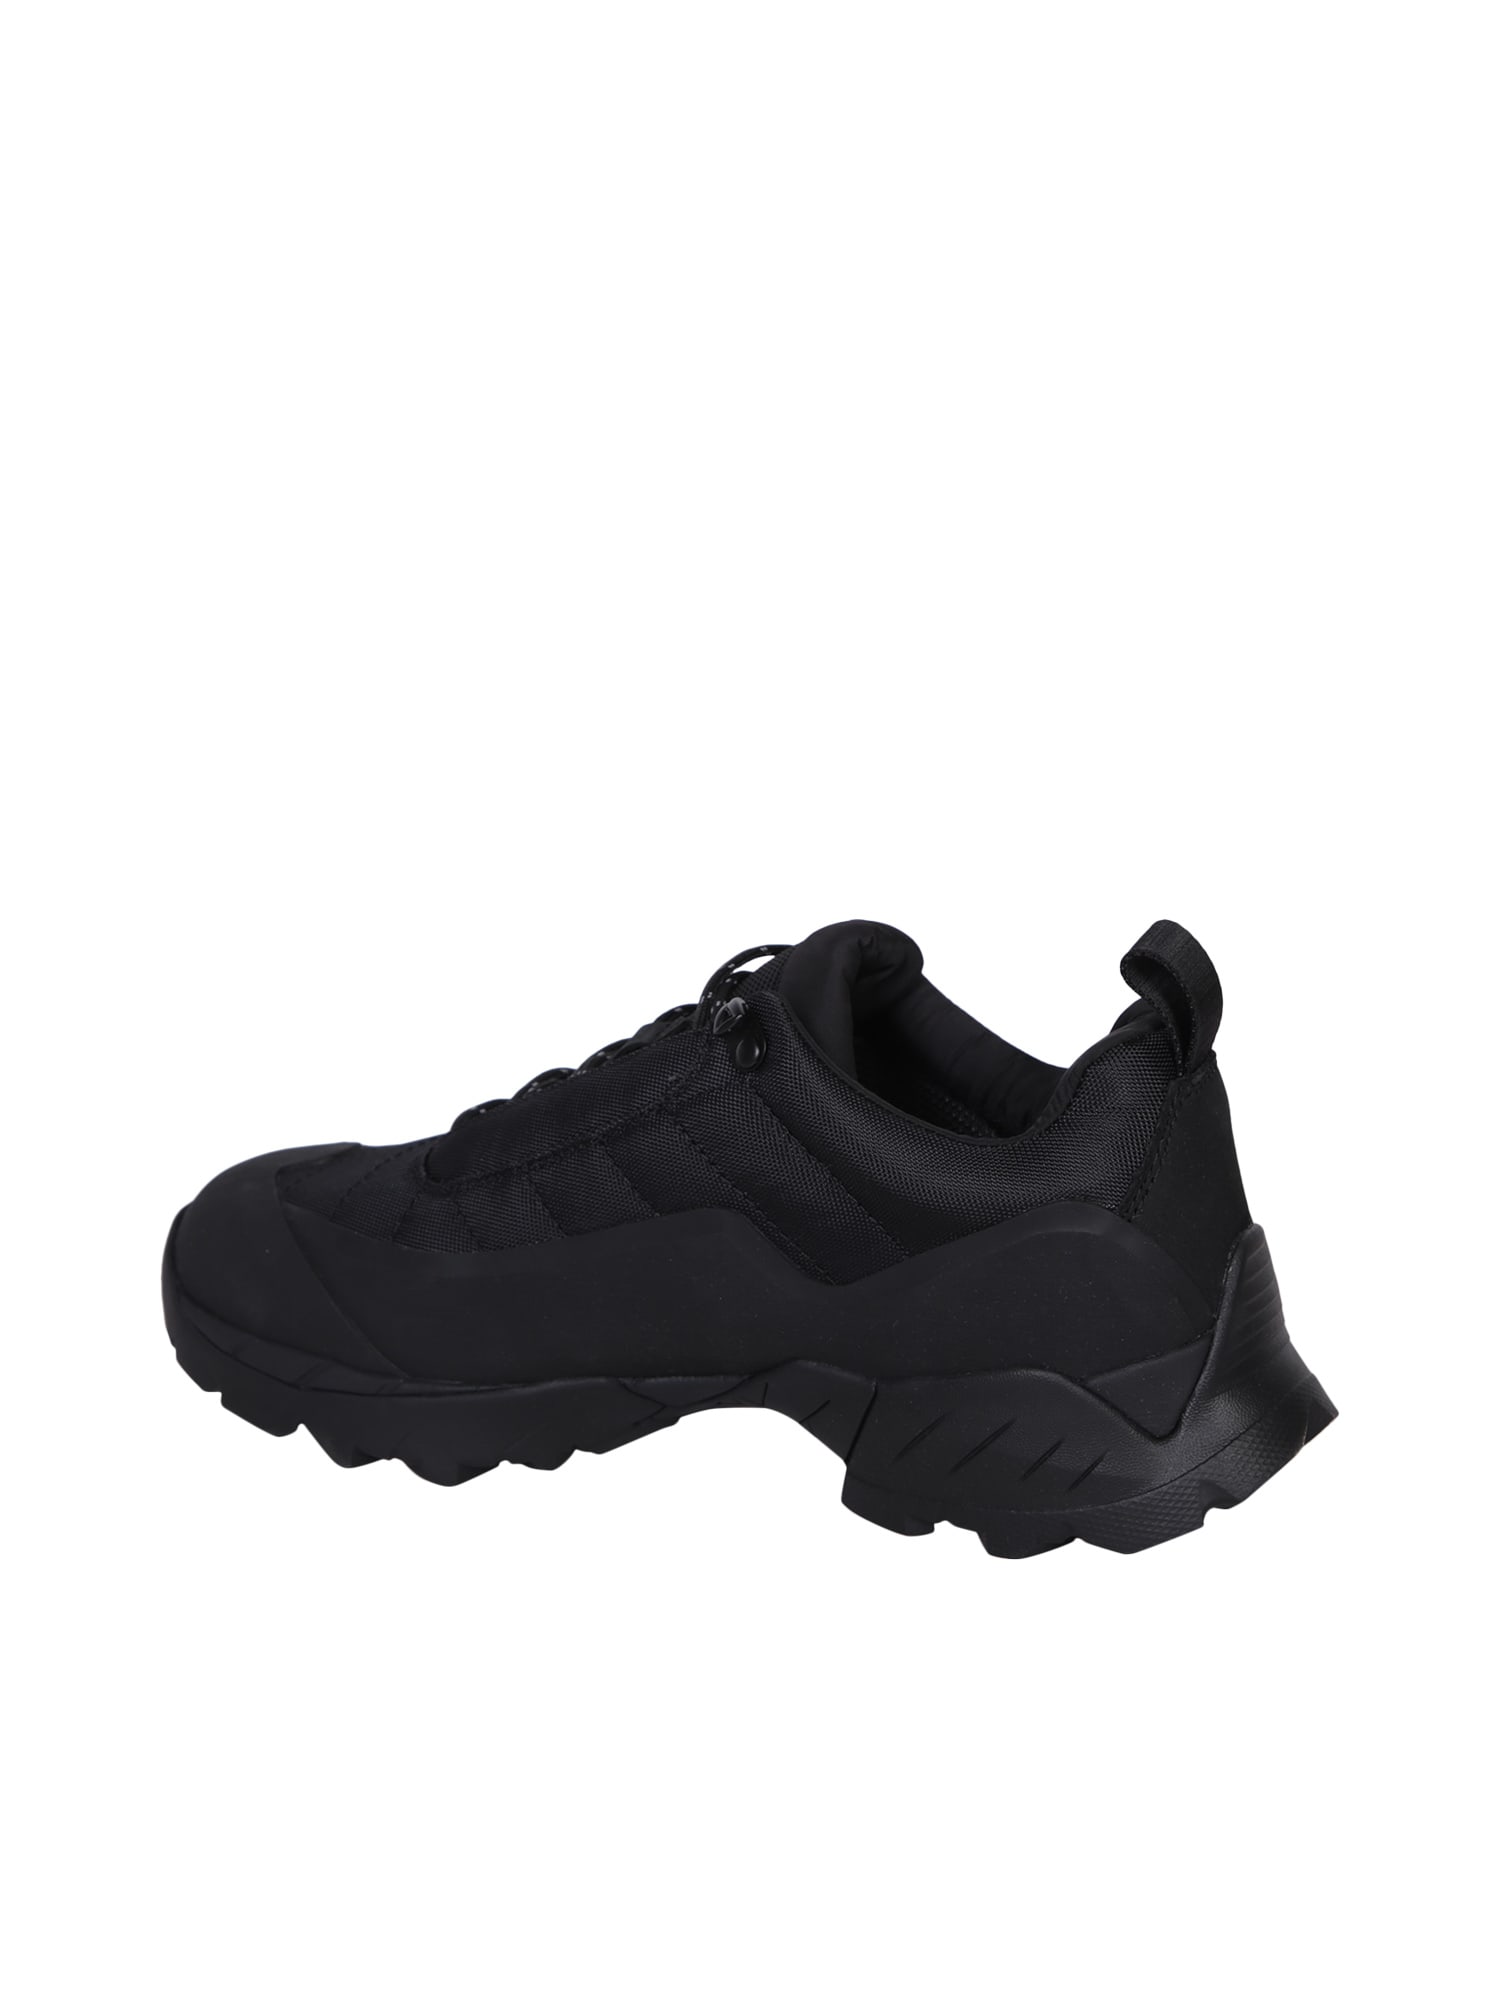 Shop Roa Khatarina Black Sneakers